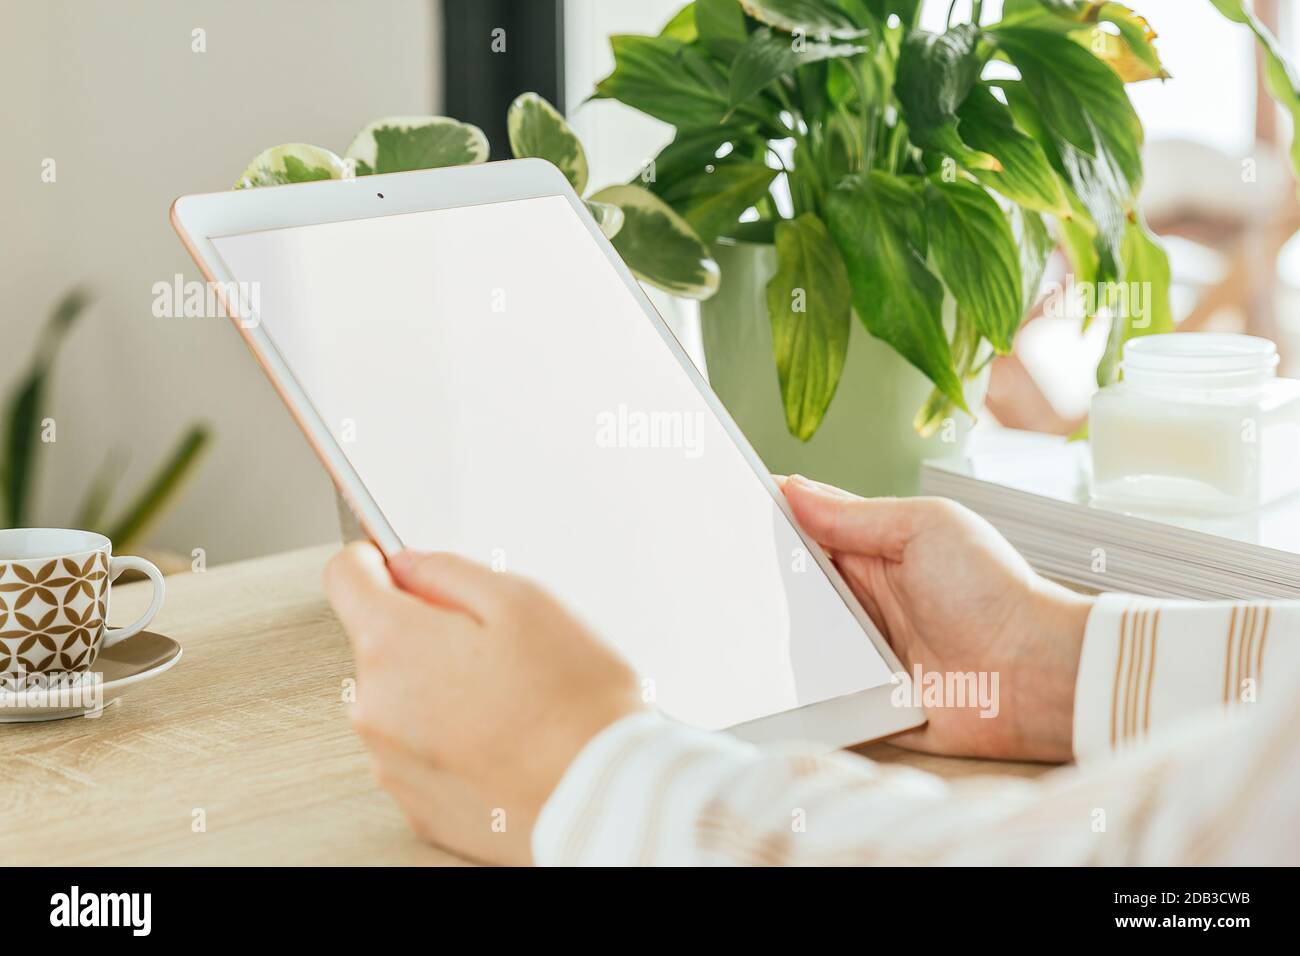 Maquette d'écran blanc de tablette tenue par la main d'une femme qui se trouve dans le salon. Écran vide pour insérer le modèle. Banque D'Images